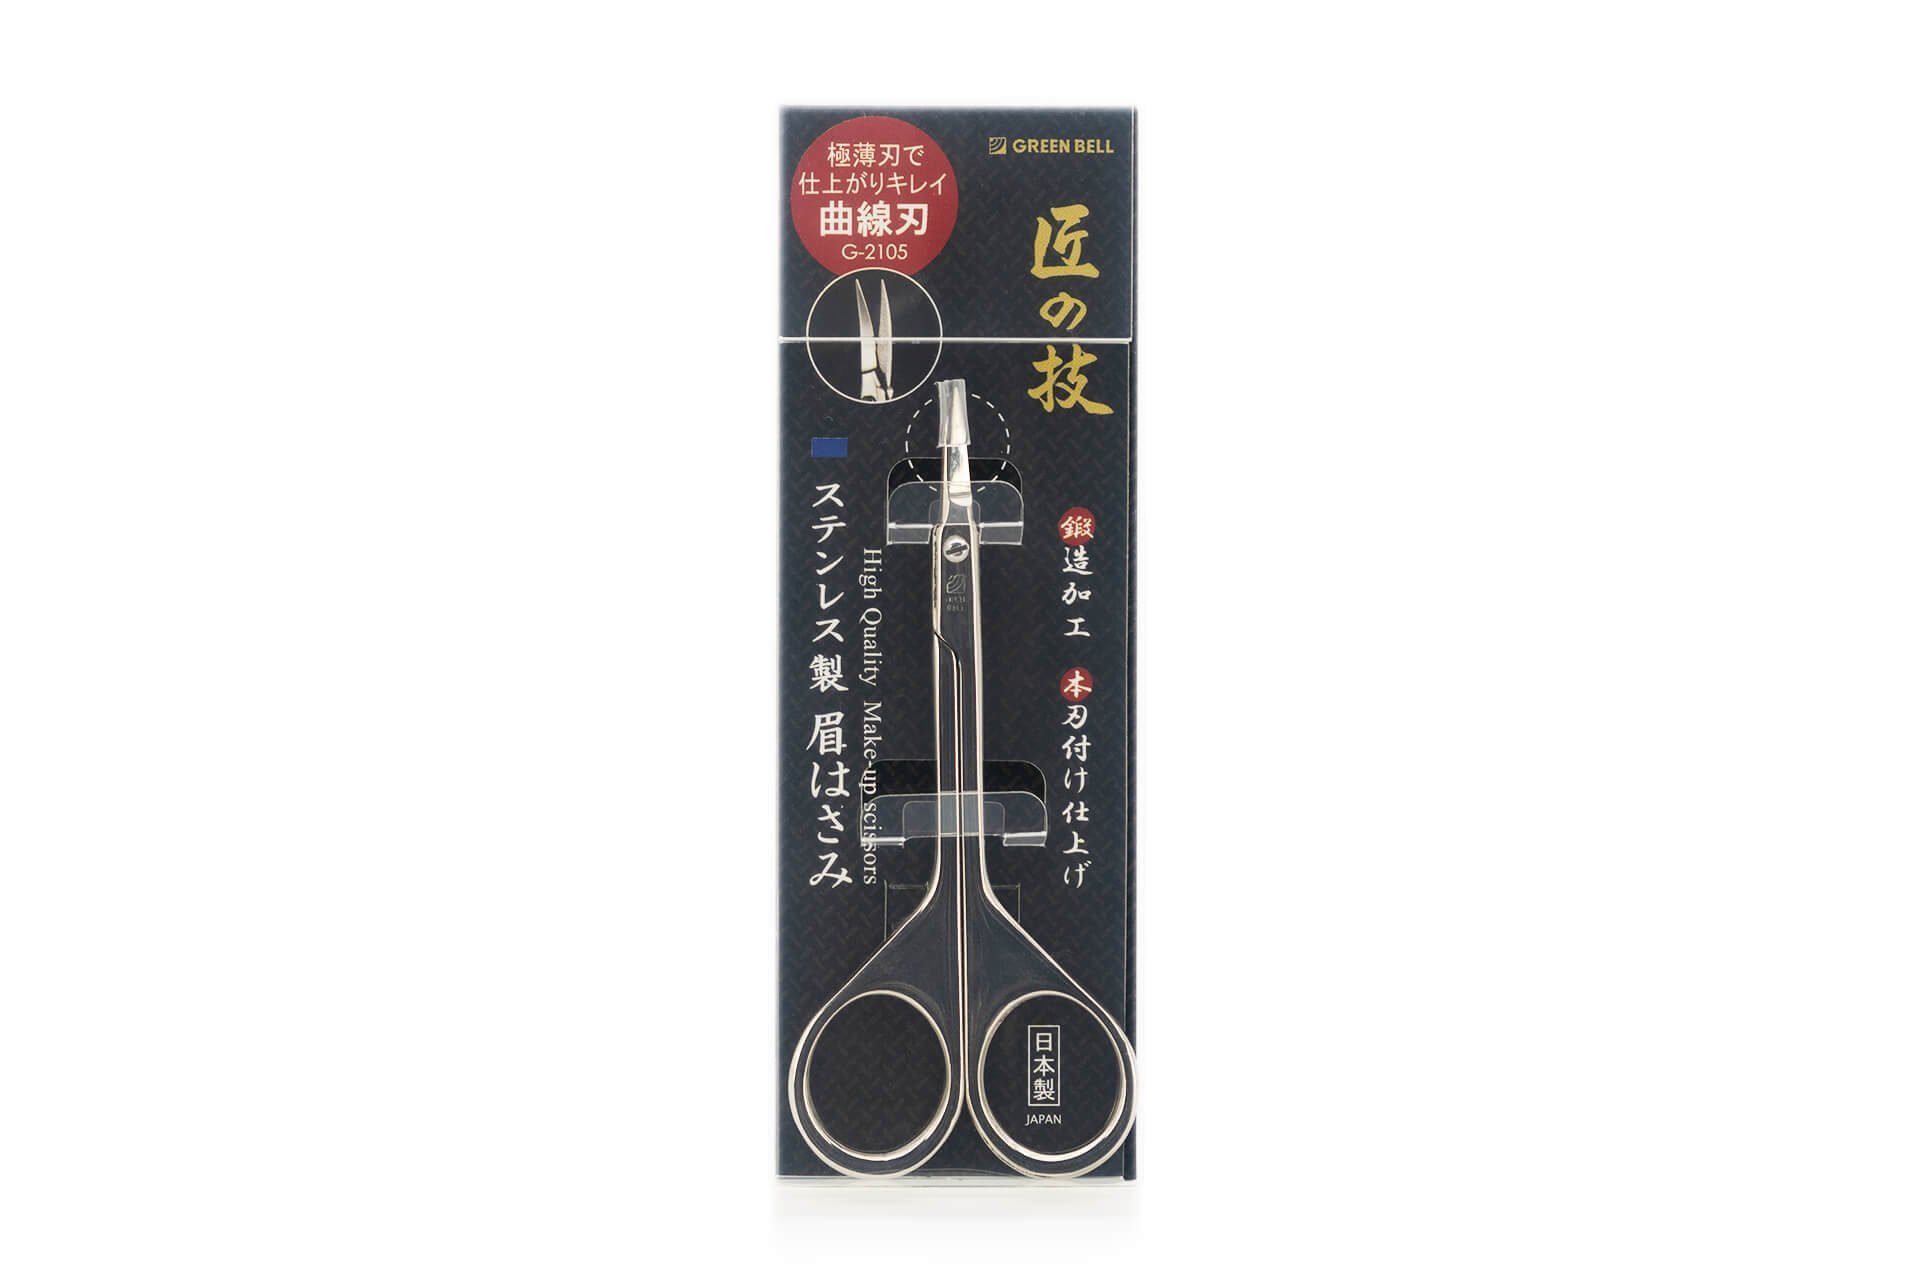 Japan aus Edelstahl G-2105 Qualitätsprodukt 9.4x4.5x0.8 handgeschärftes Augenbrauenschere cm, Augenbrauentrimmer EDGE Seki geschmiedet aus